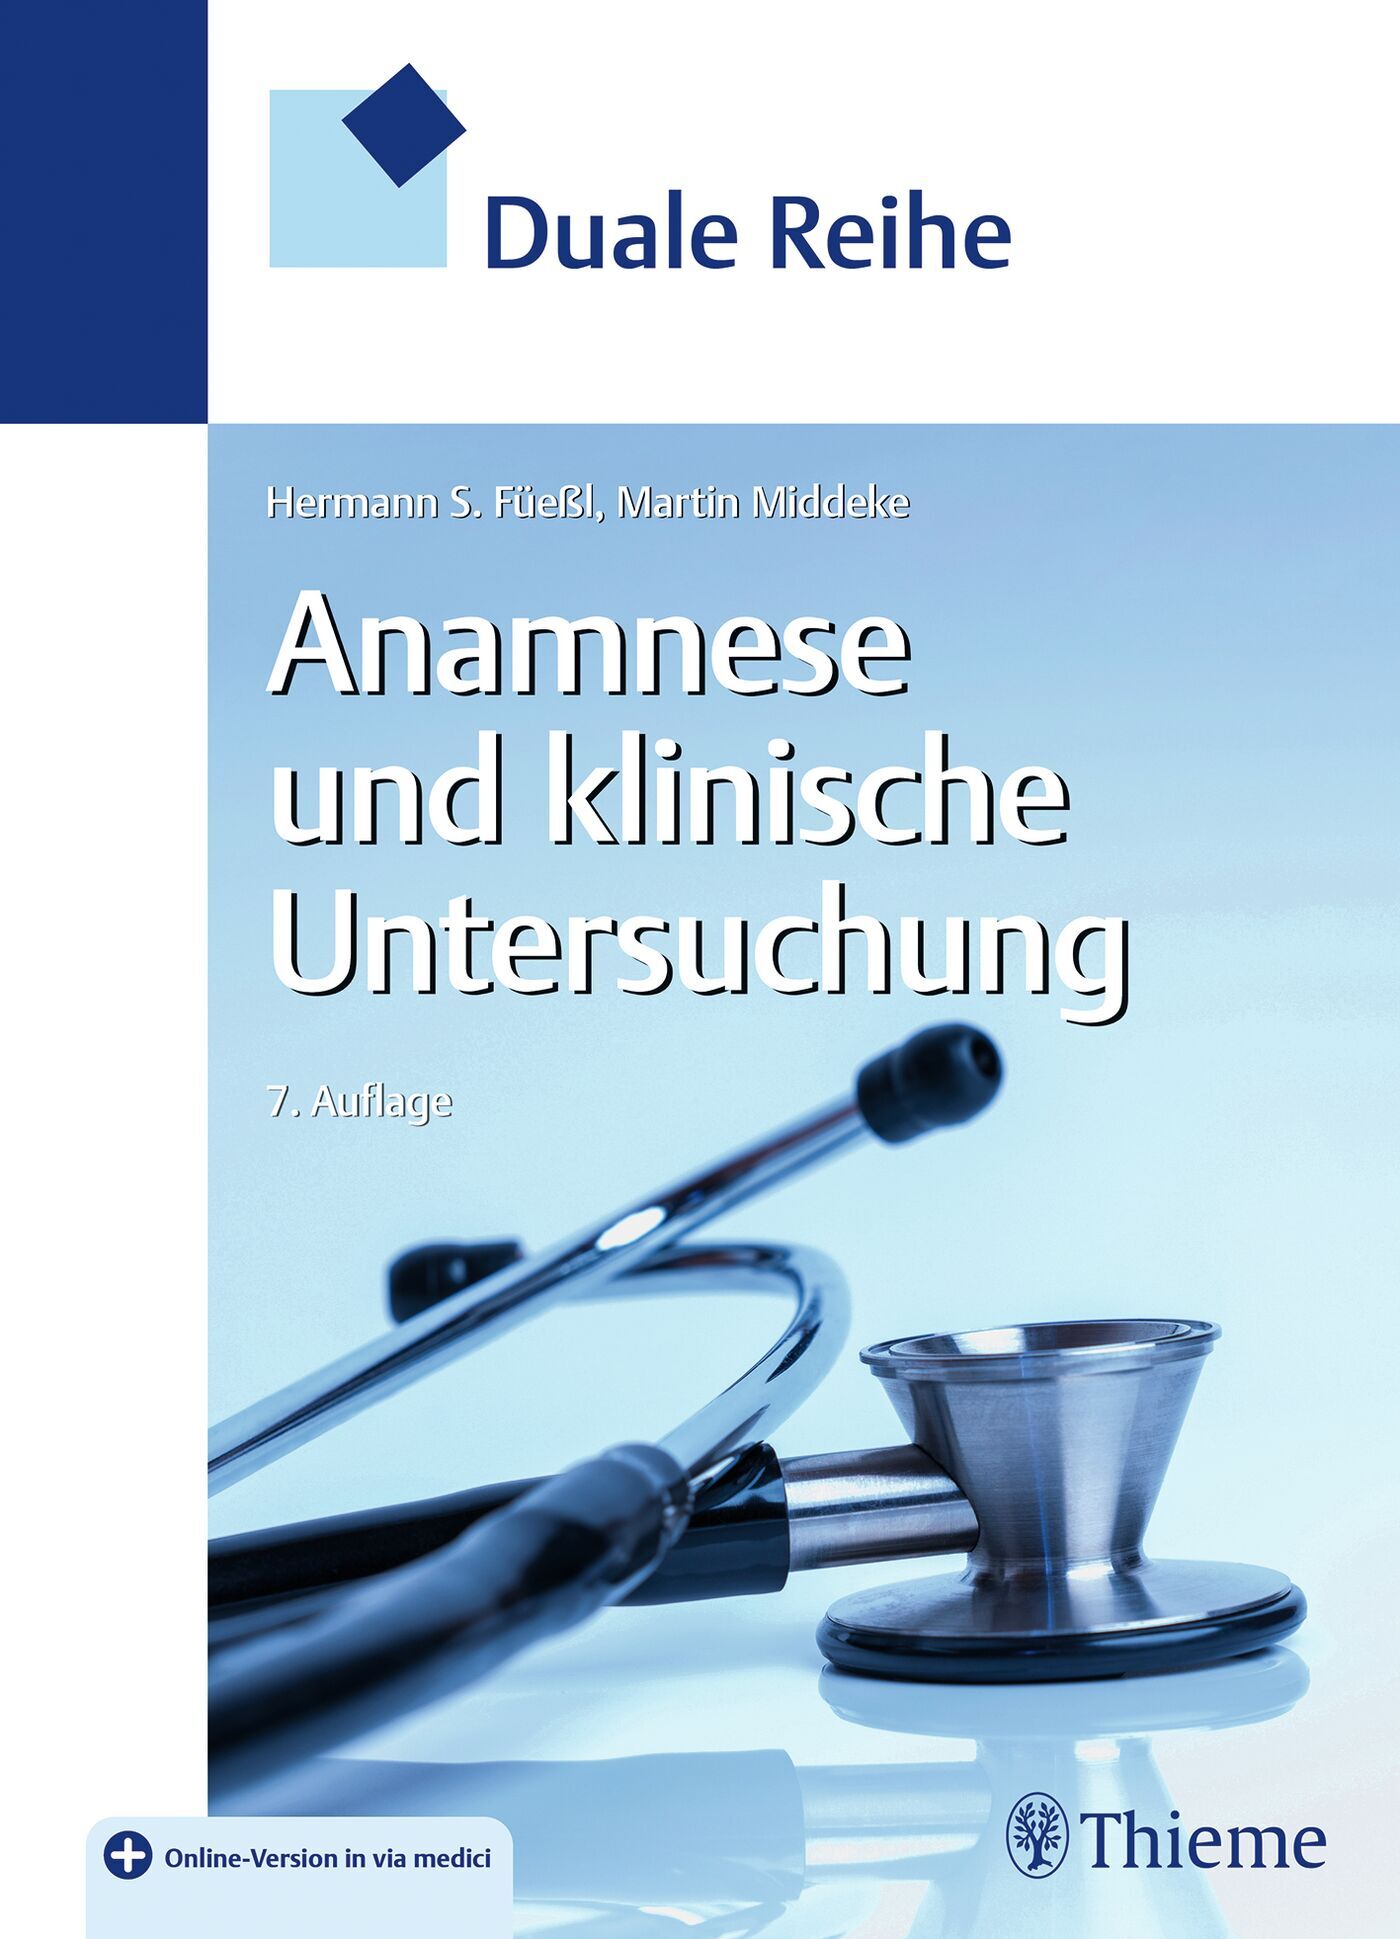 Duale Reihe Anamnese und Klinische Untersuchung, 9783132443099